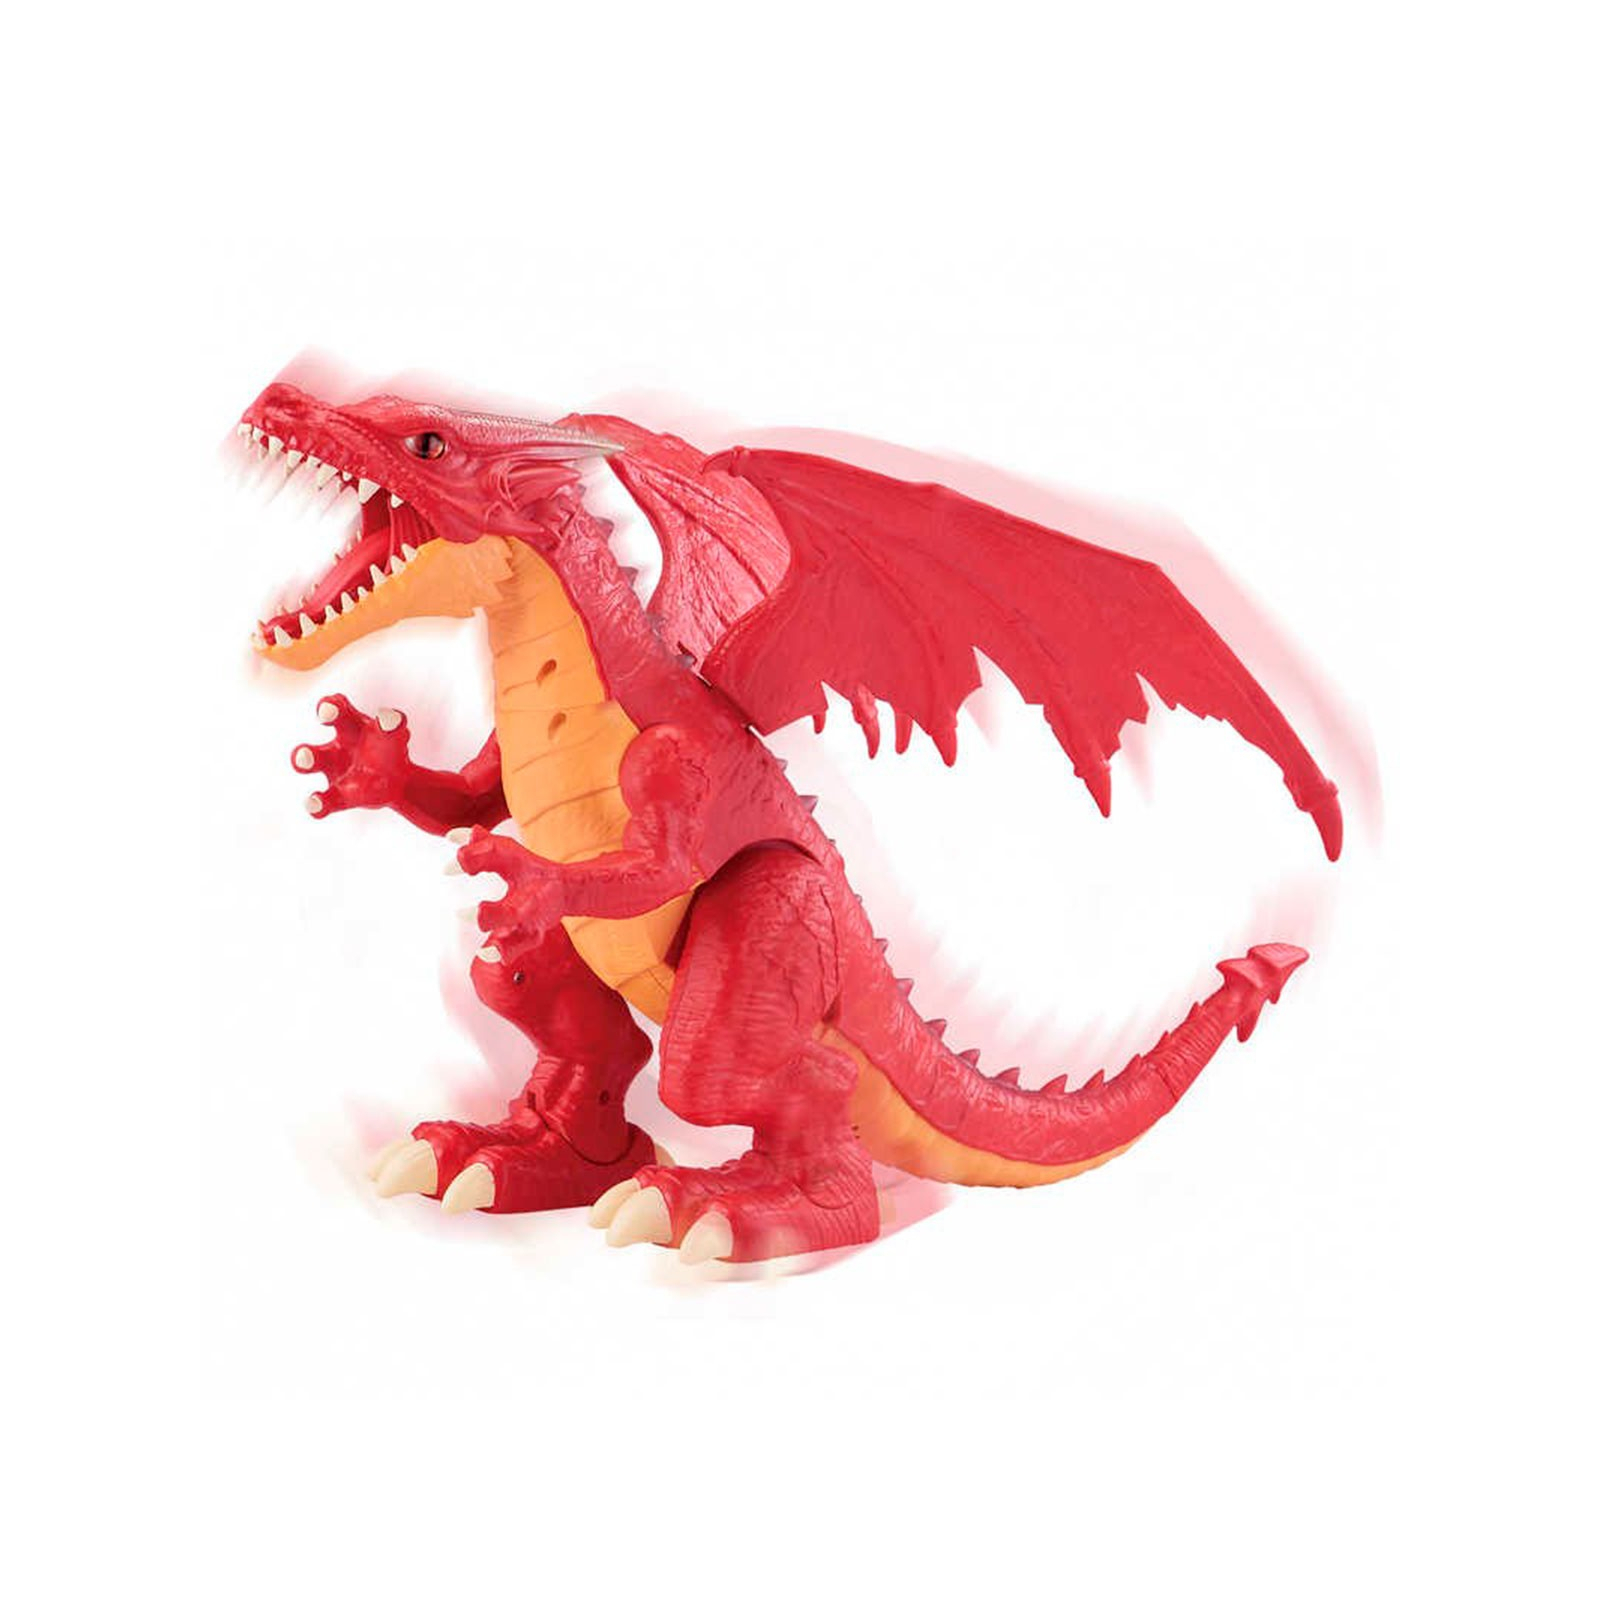 Интерактивная игрушка Pets & Robo Alive Robo Alive - Огненный дракон (7115R) изображение 2